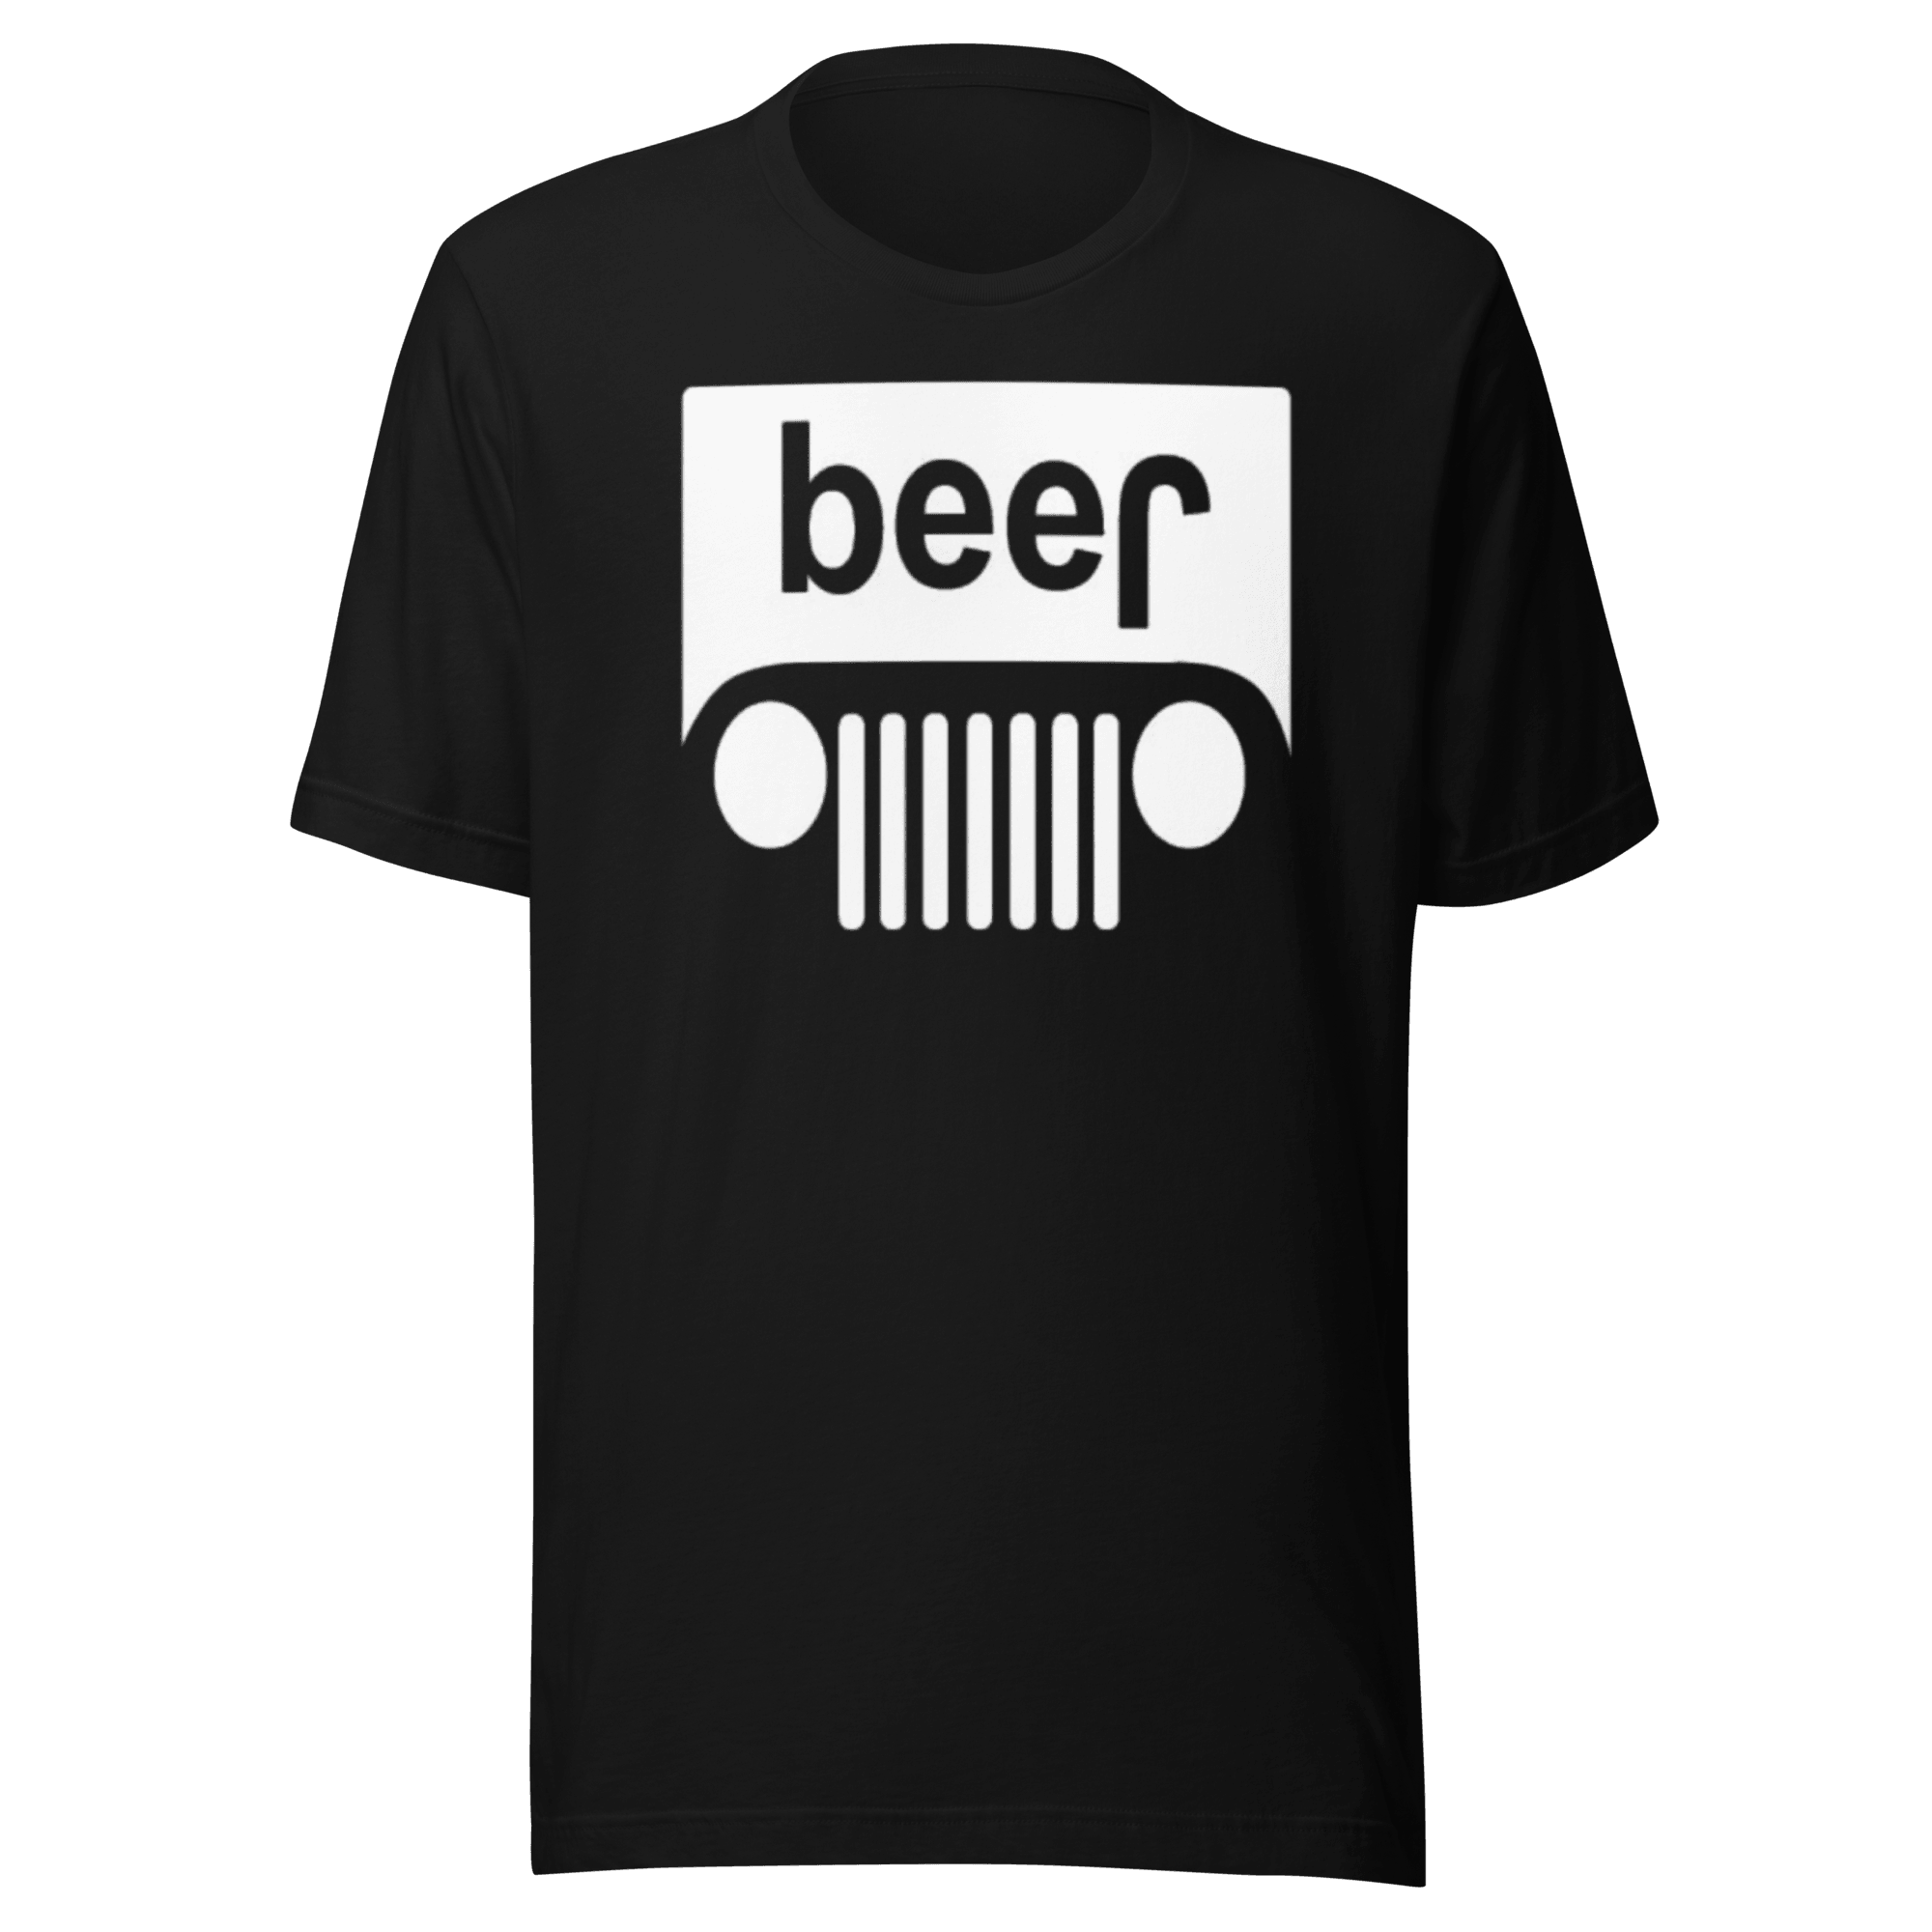 Beer T-shirt Short Sleeve Ultra Soft 100% Cotton Crewneck Unisex Tee - TopKoalaTee